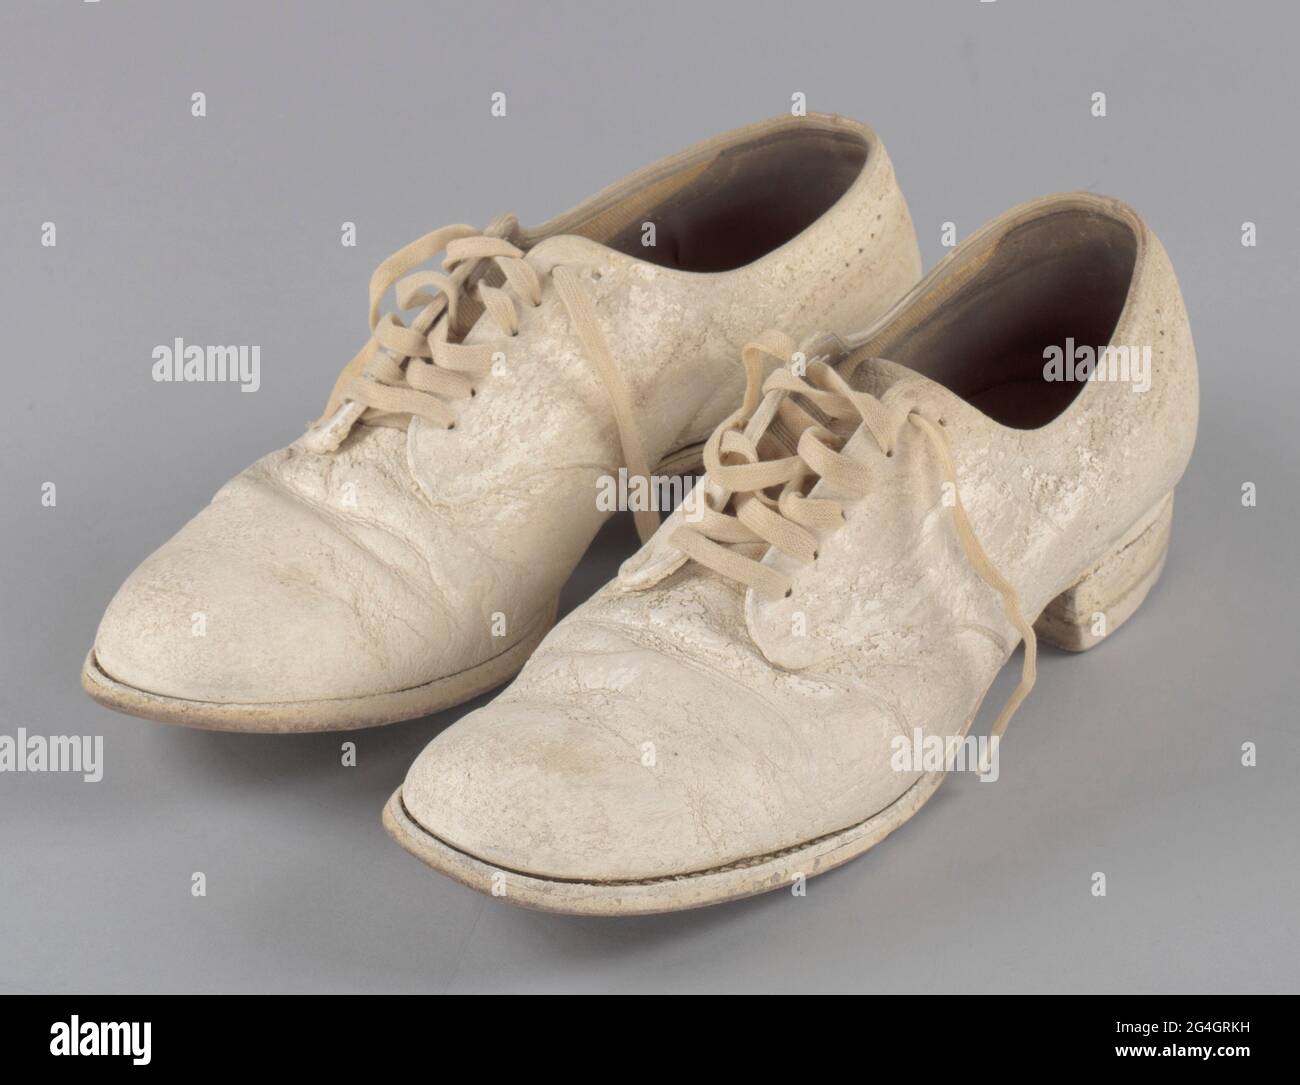 Pauline Brown Payne war eine afroamerikanische  Krankenpflegeschulverwalterin. Weiße Schuhe mit weißen Schnürsenkeln im  Flügelspitzenstil. Schuhe mit weißem Schuhcreme bezogen. Schuhe haben eine  leichte Heilung mit Sohlenschutz hinzugefügt. Die Heals ...